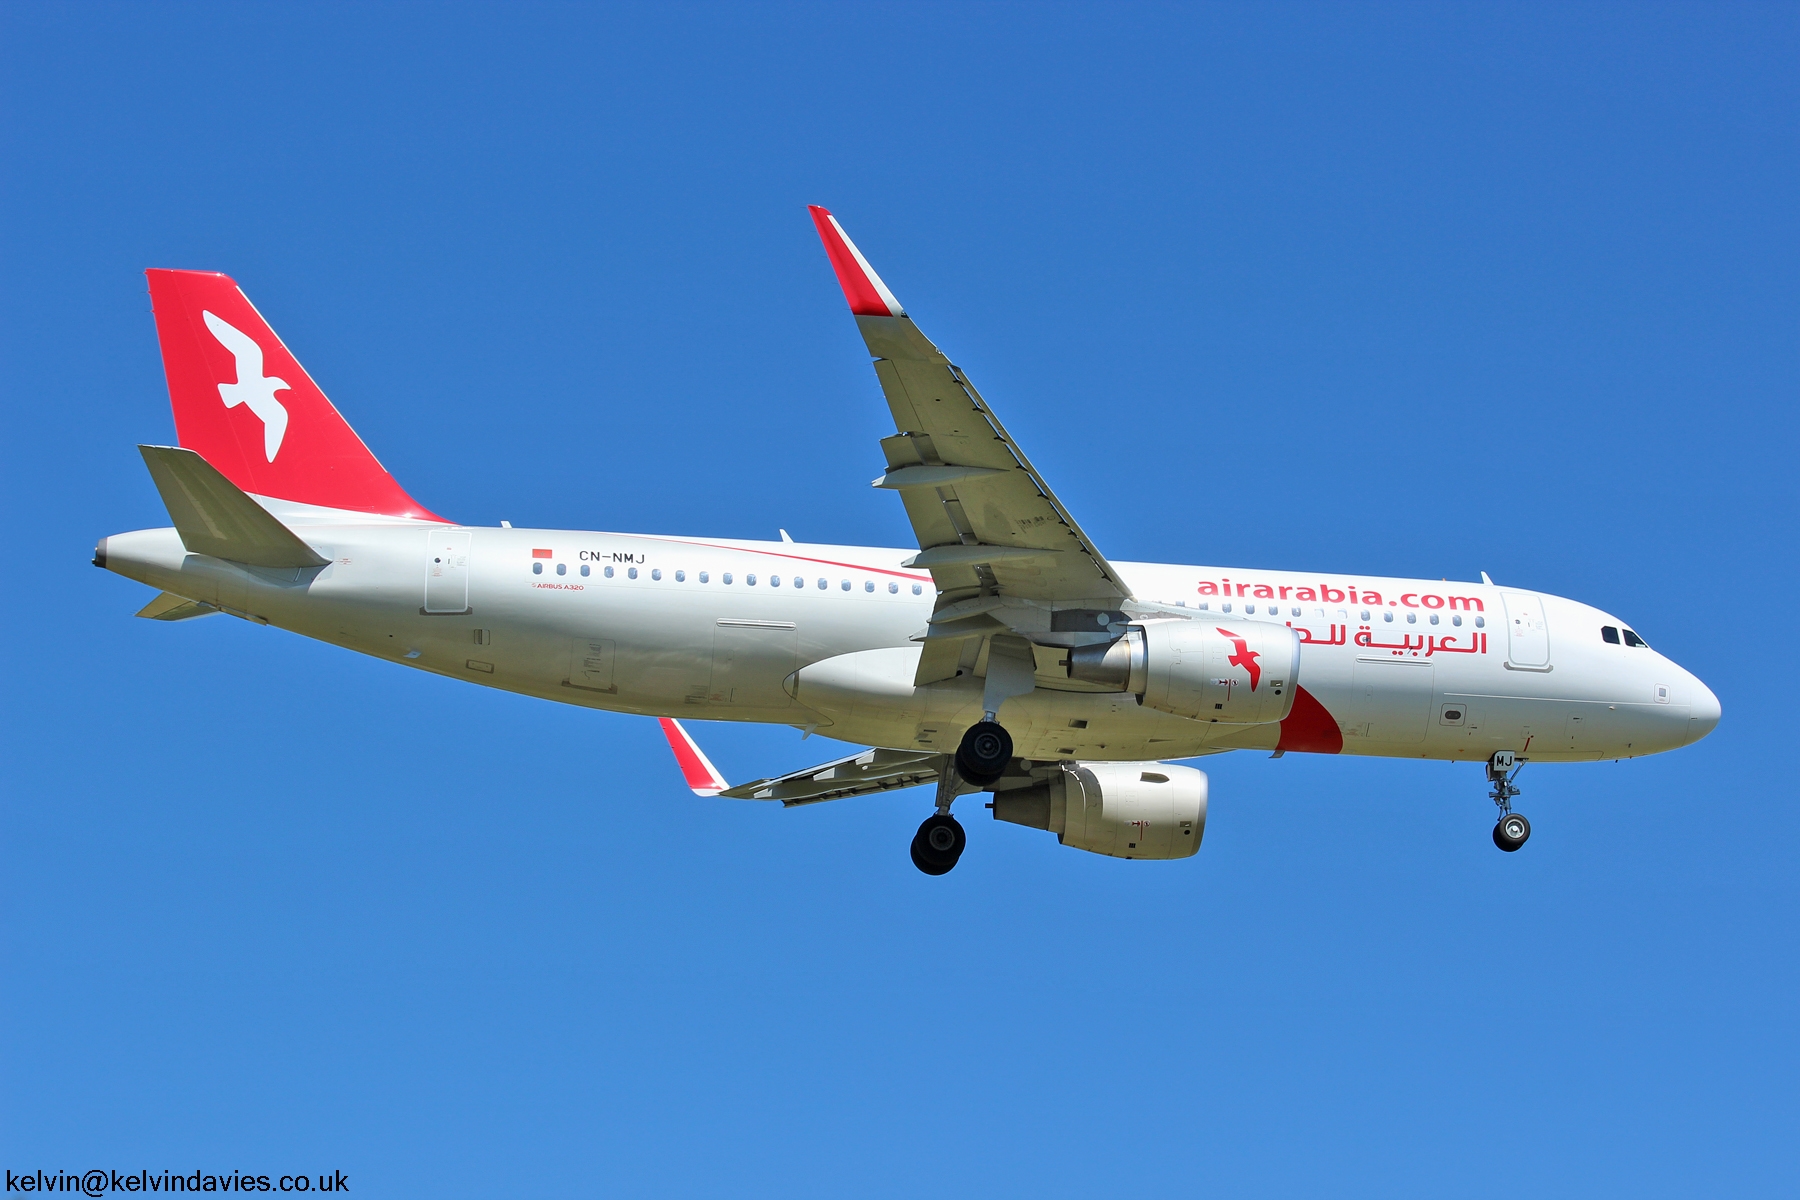 Air Arabia Maroc A320 CN-NMJ